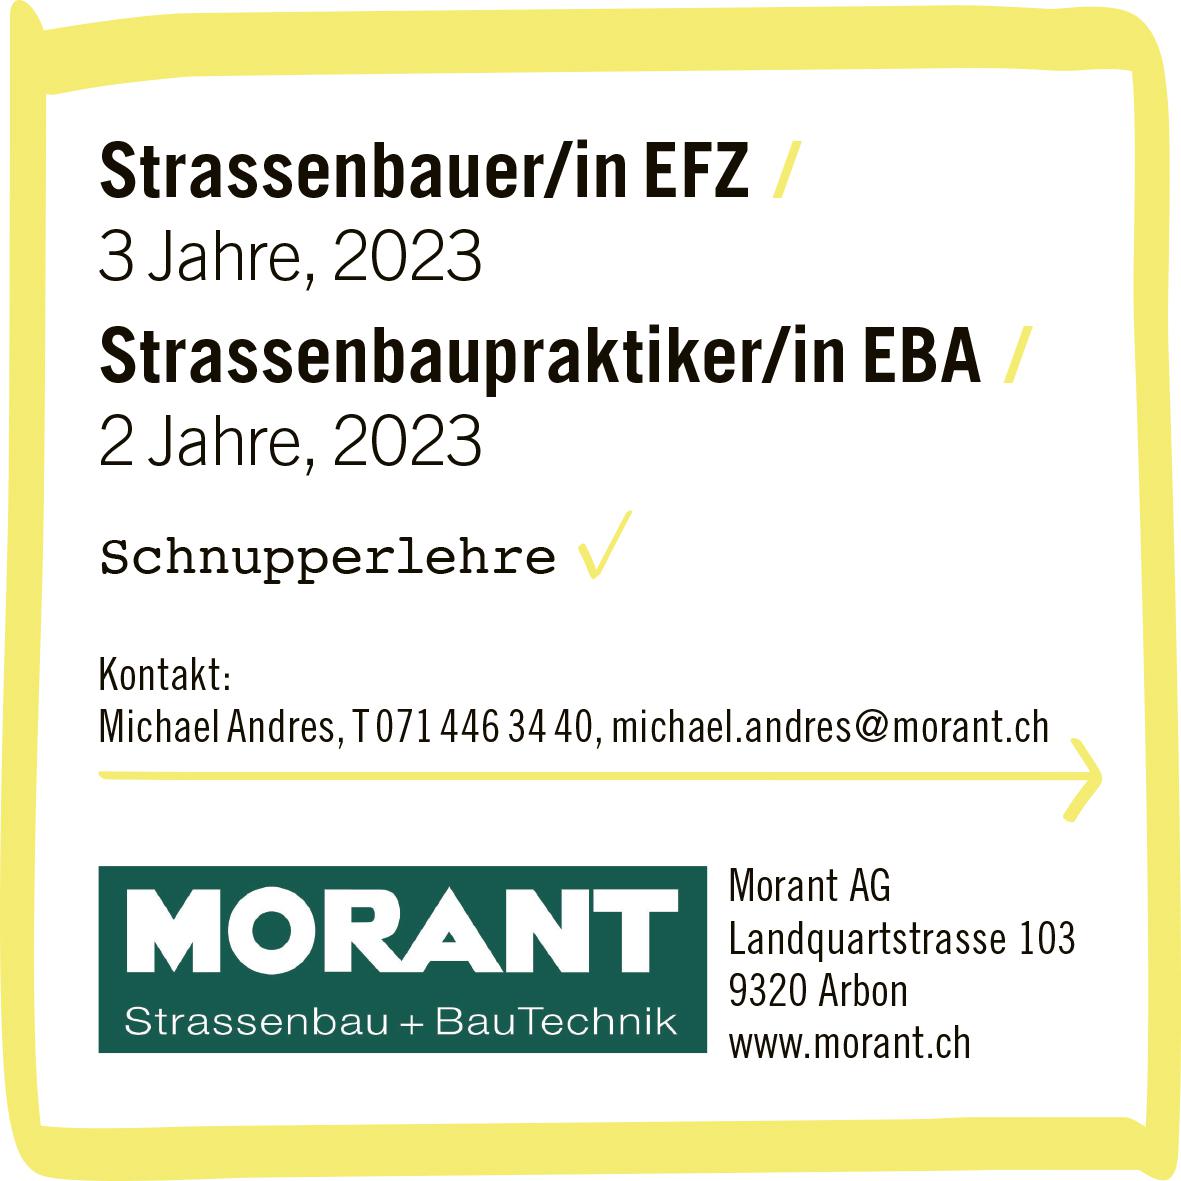 Morant AG, Arbon - Strassenbauer/in EFZ / Strassenbaupraktiker/in EBA /